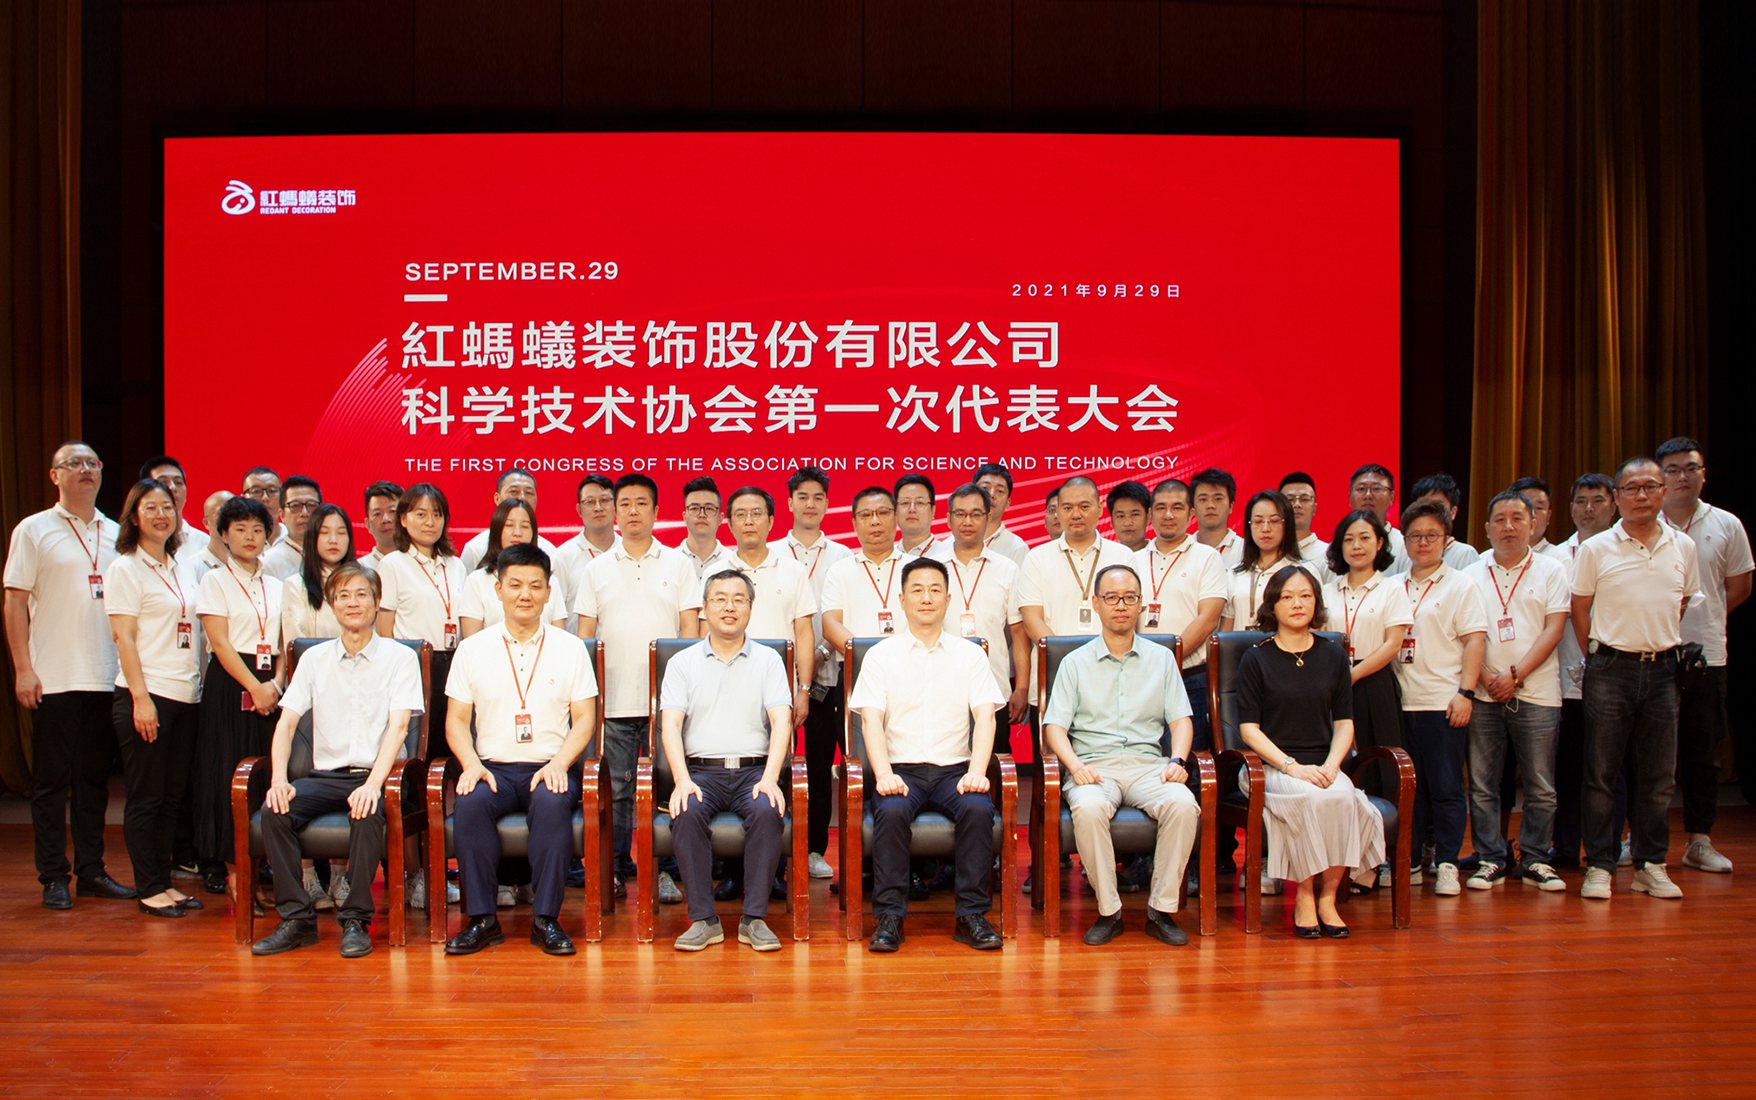 红蚂蚁丨姑苏区首家民营企业科学技术协会成立